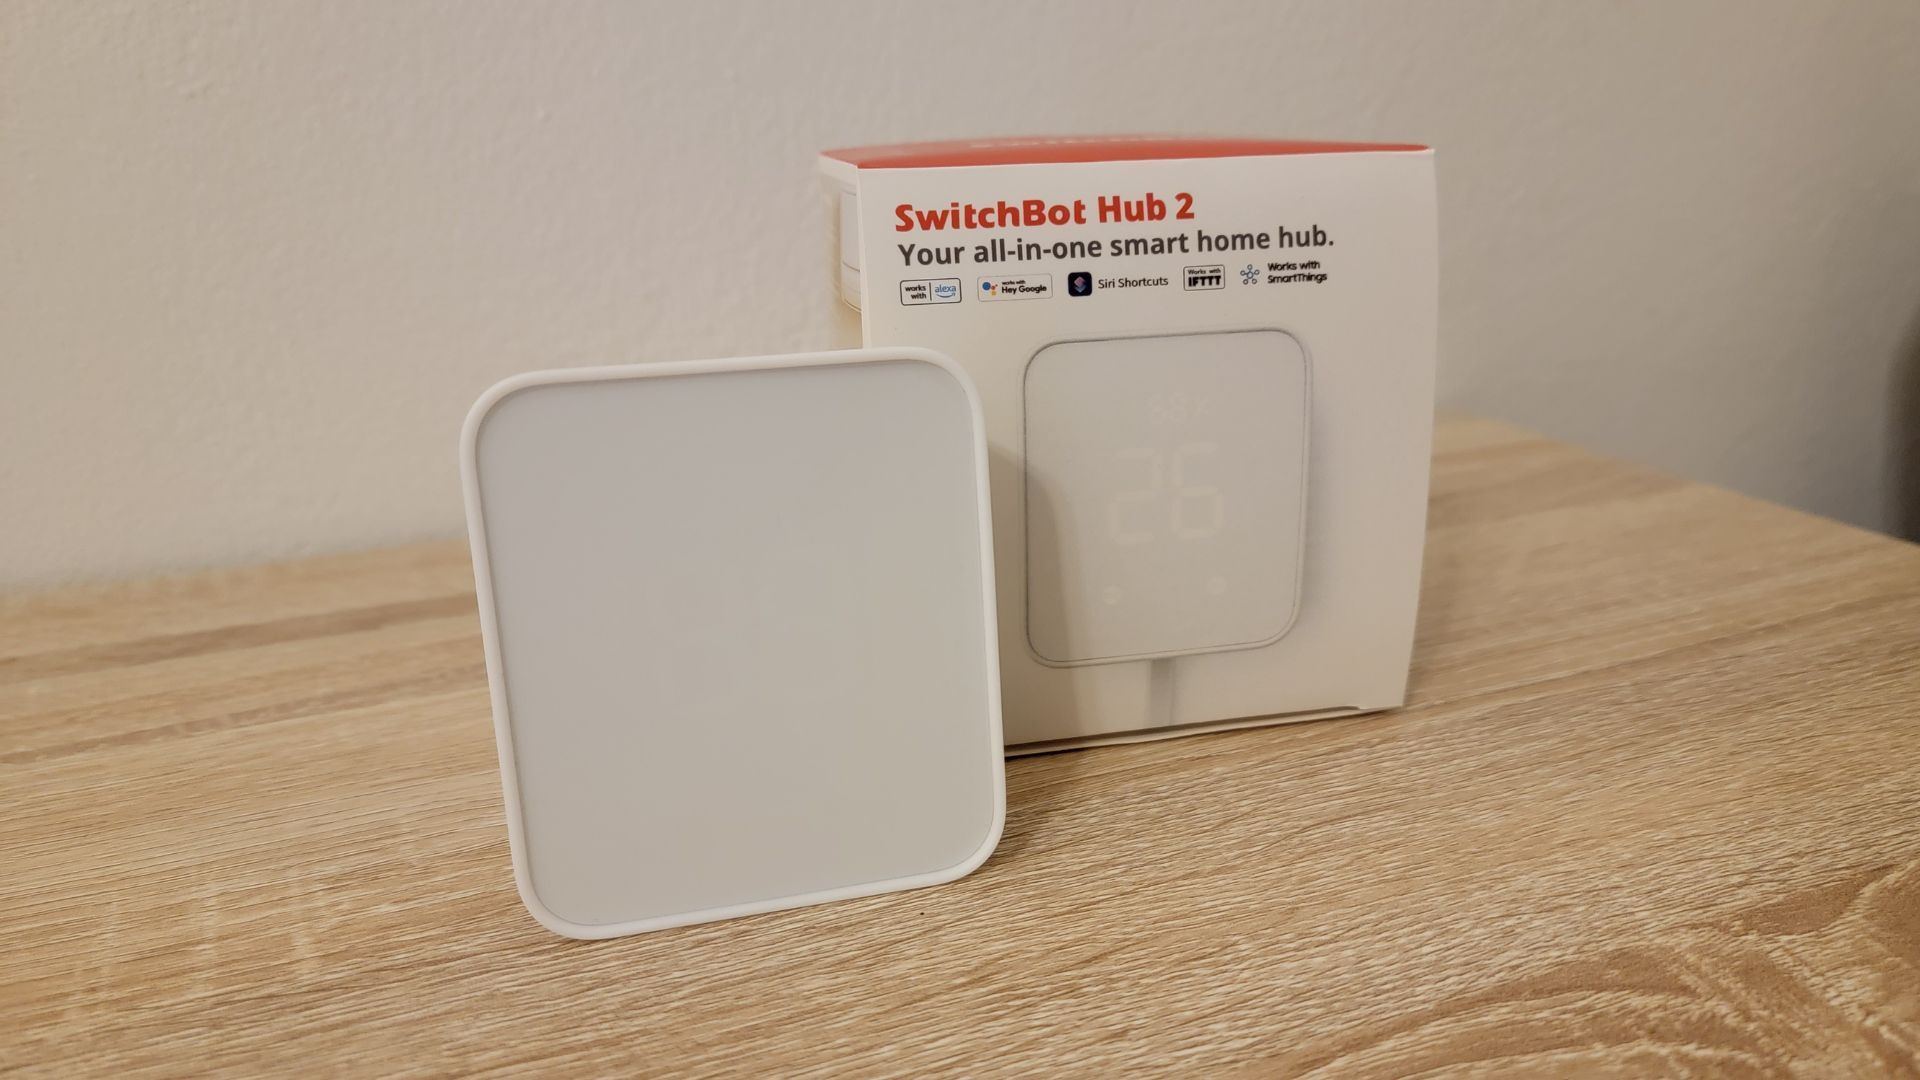 SwitchBot Hub 2 desligado ao lado da caixa do produto